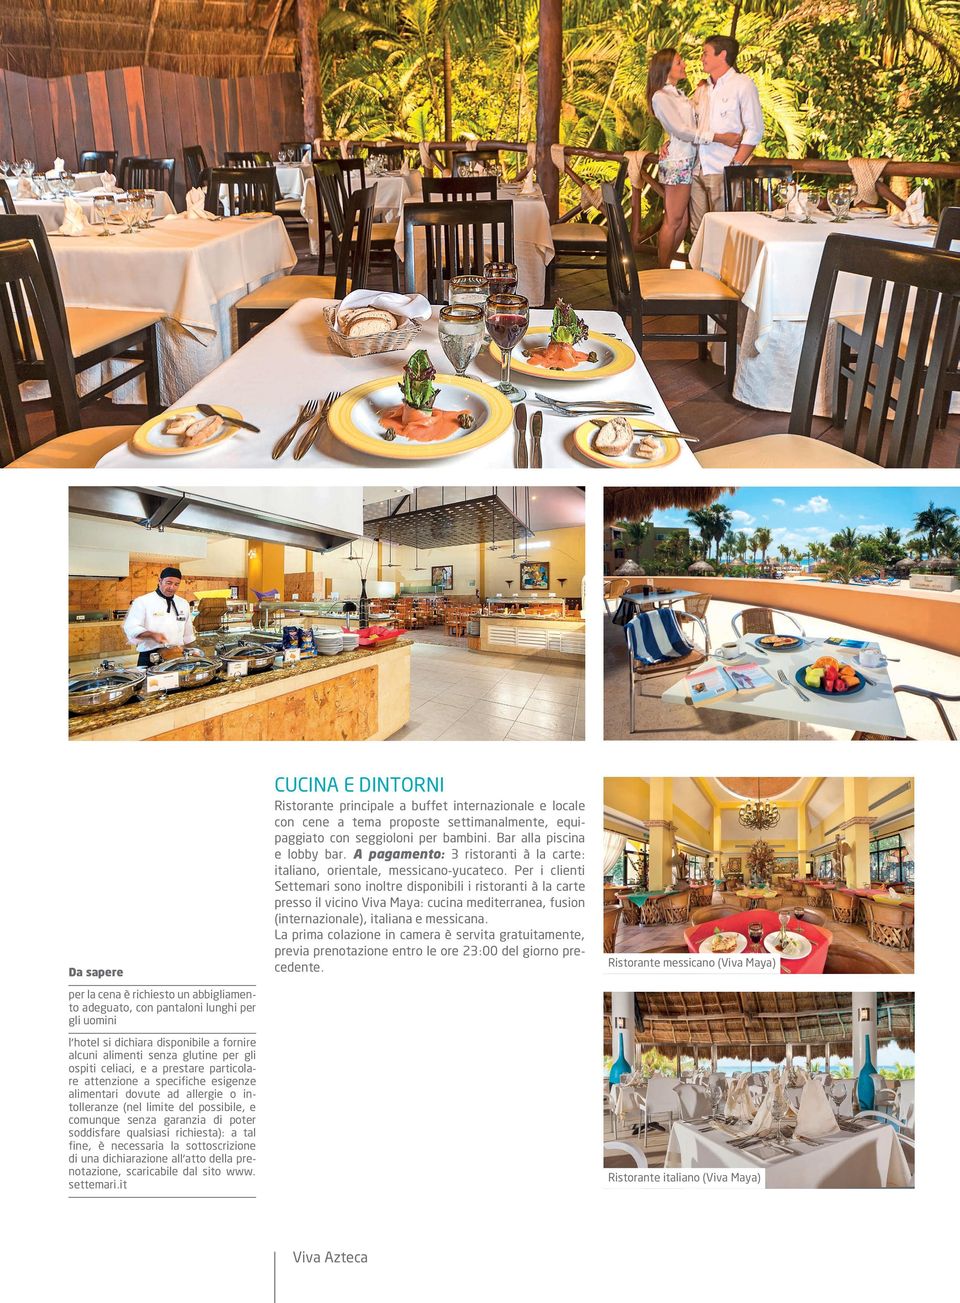 Per i clienti Settemari sono inoltre disponibili i ristoranti à la carte presso il vicino Viva Maya: cucina mediterranea, fusion (internazionale), italiana e messicana.